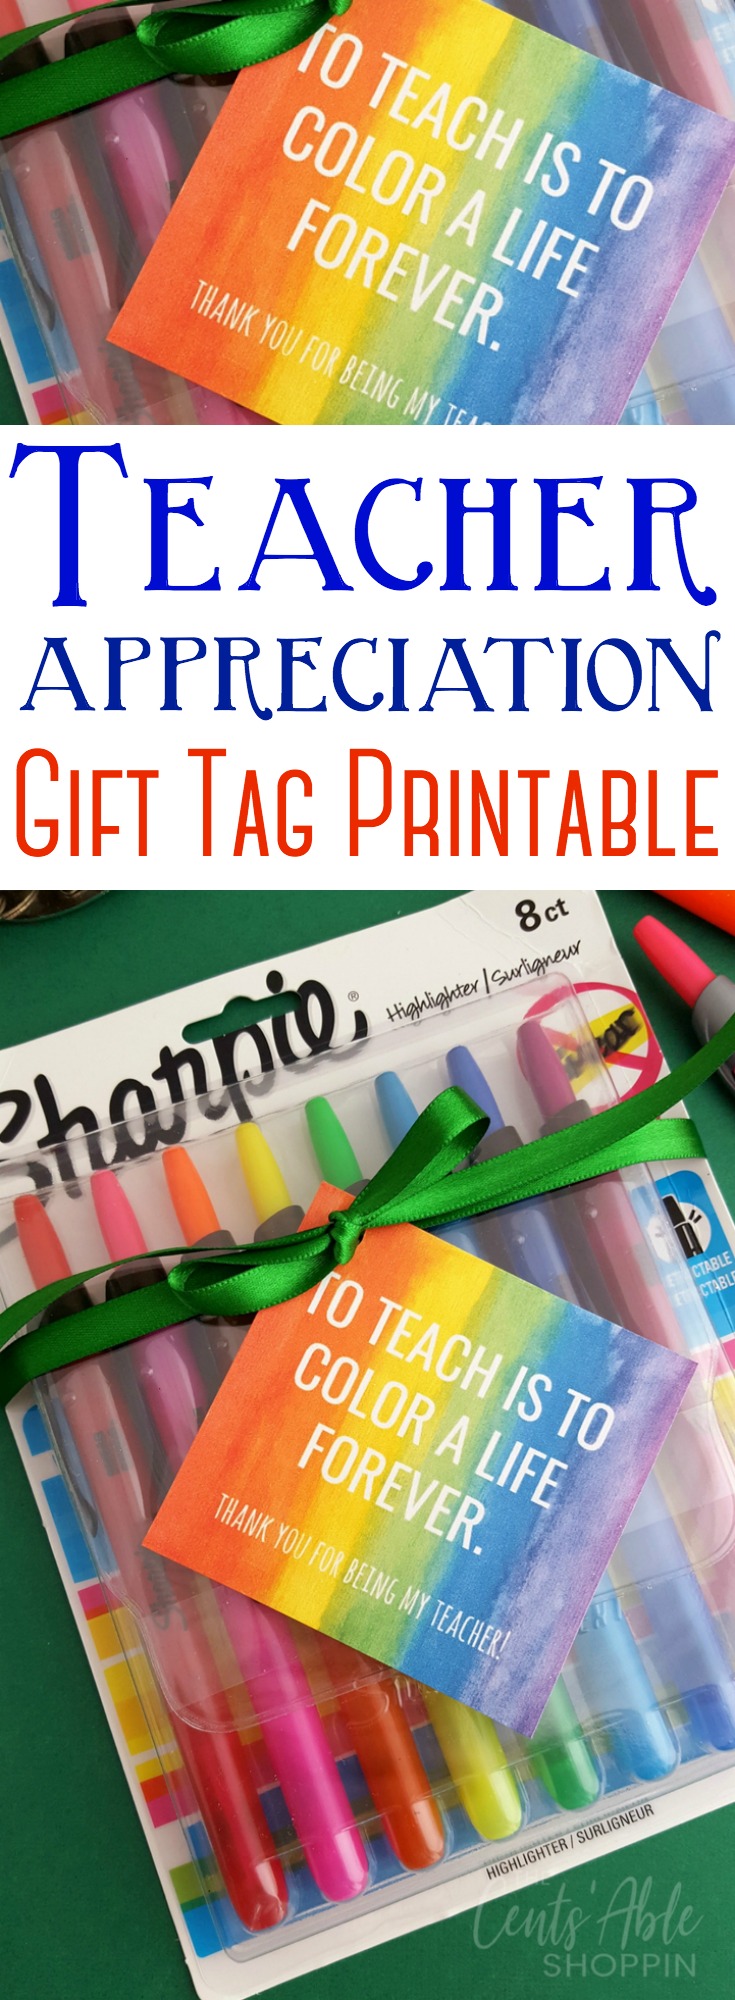 teacher-appreciation-gift-tag-printable-the-centsable-shoppin